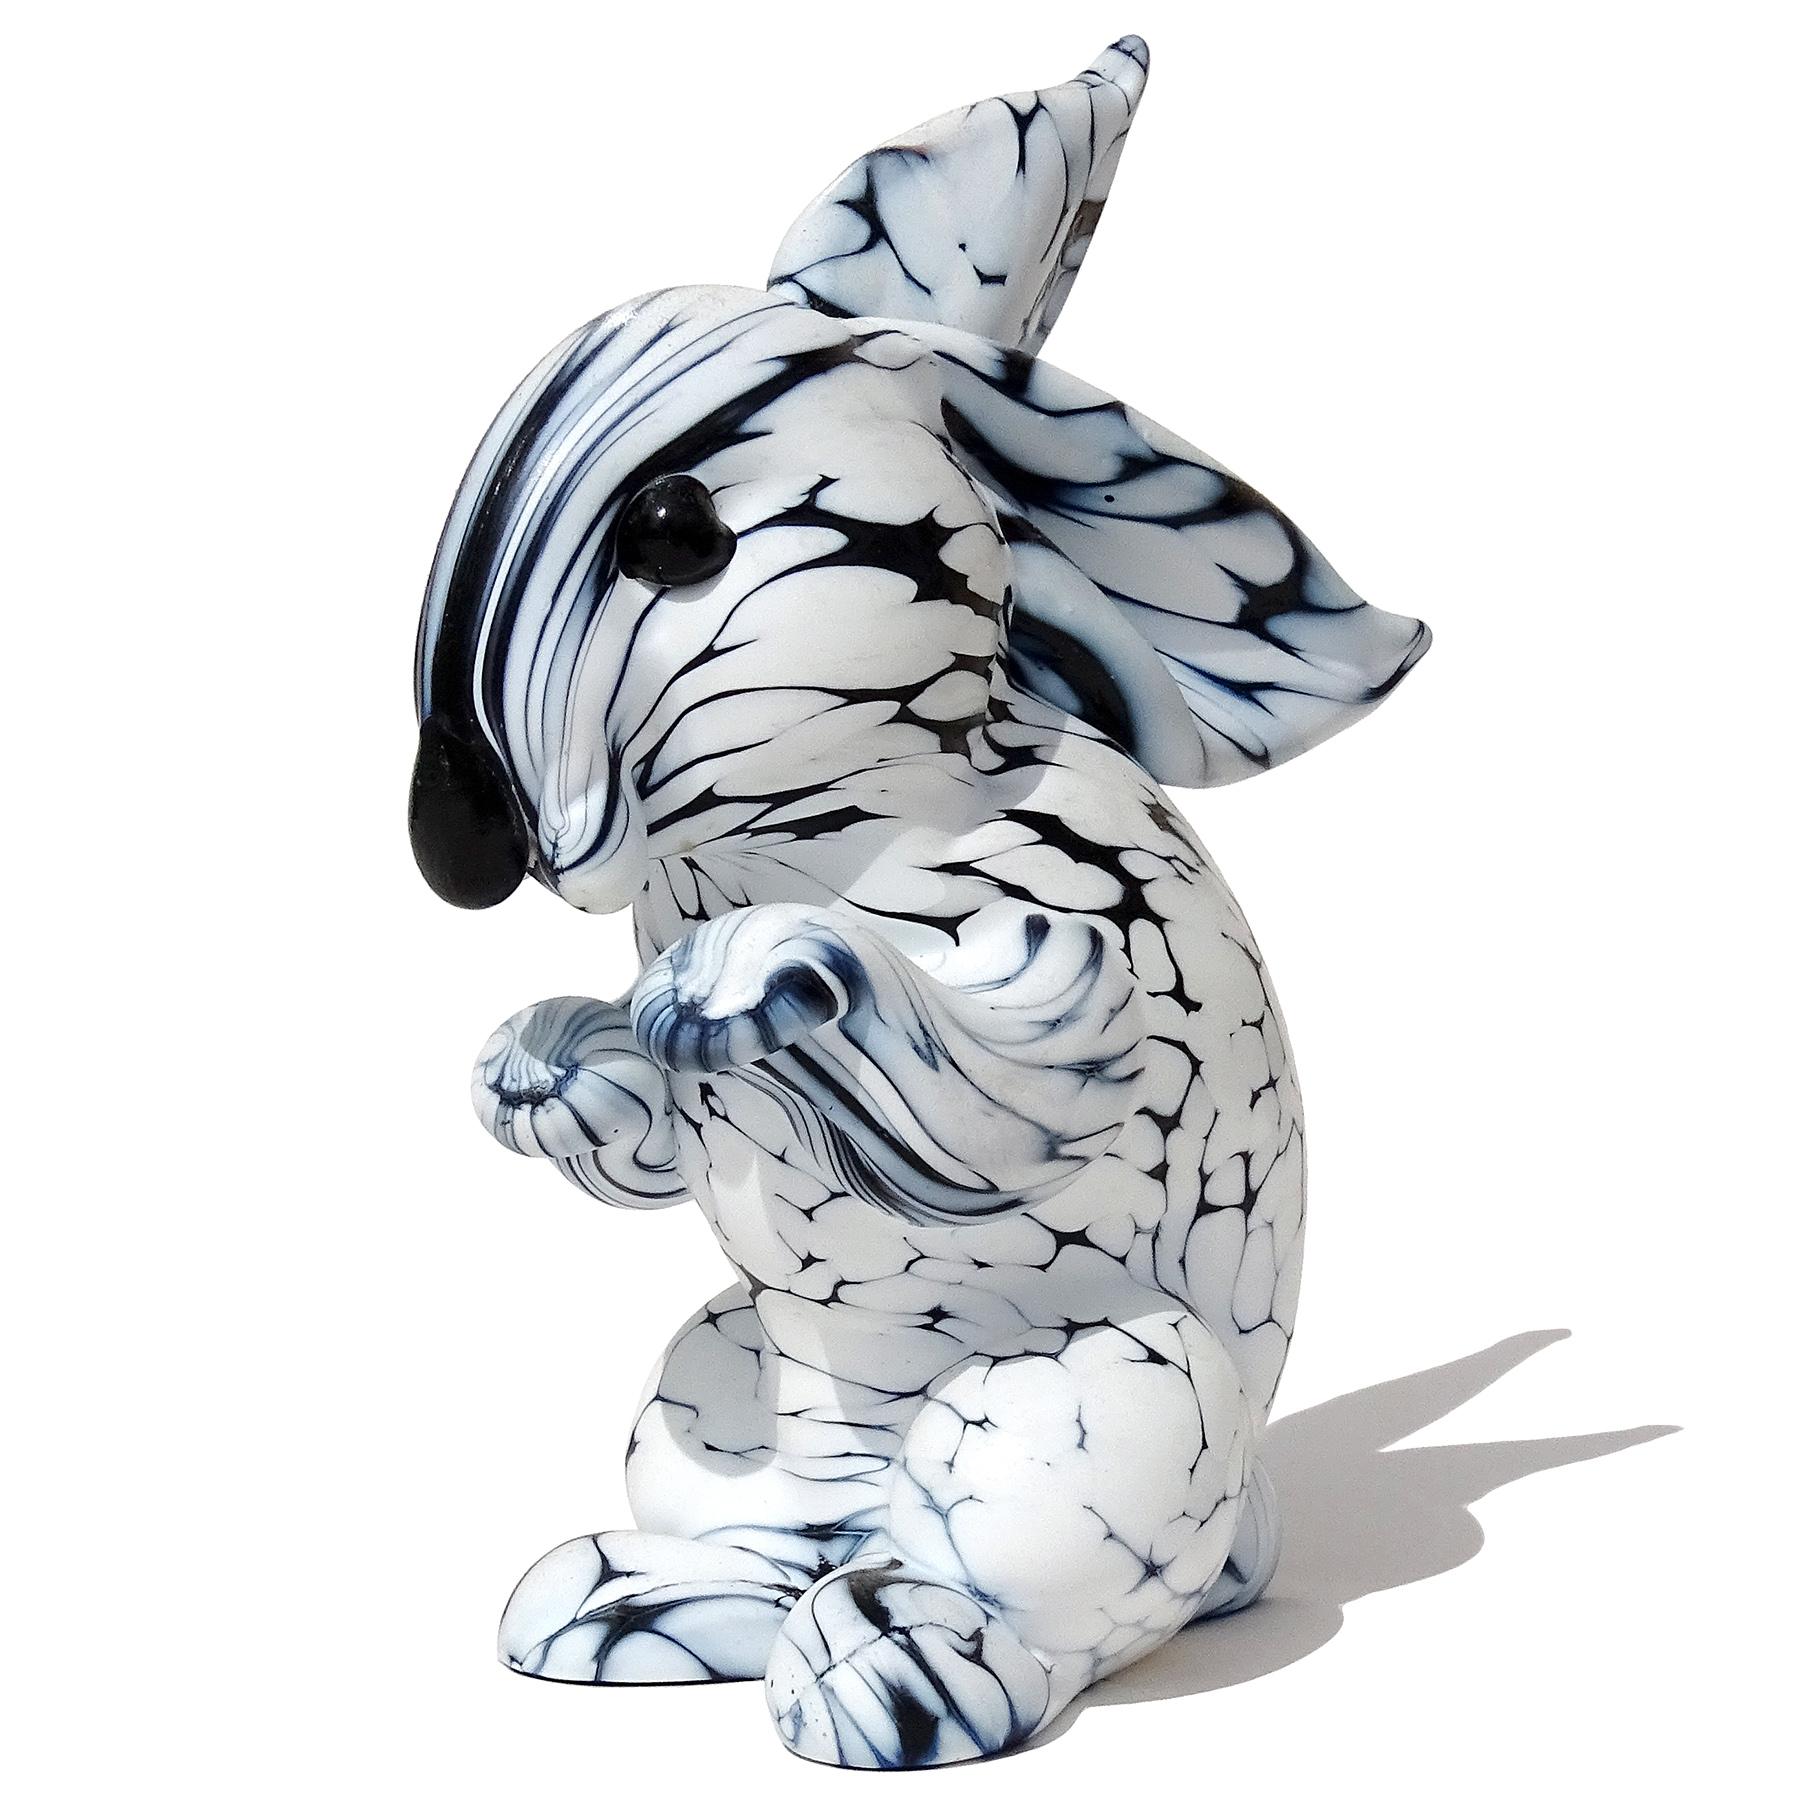 Magnifique figurine en verre d'art italien soufflé à la main de Murano, en forme de lapin, avec des taches noires et blanches. Documenté au designer Archimede Seguso, de la série 